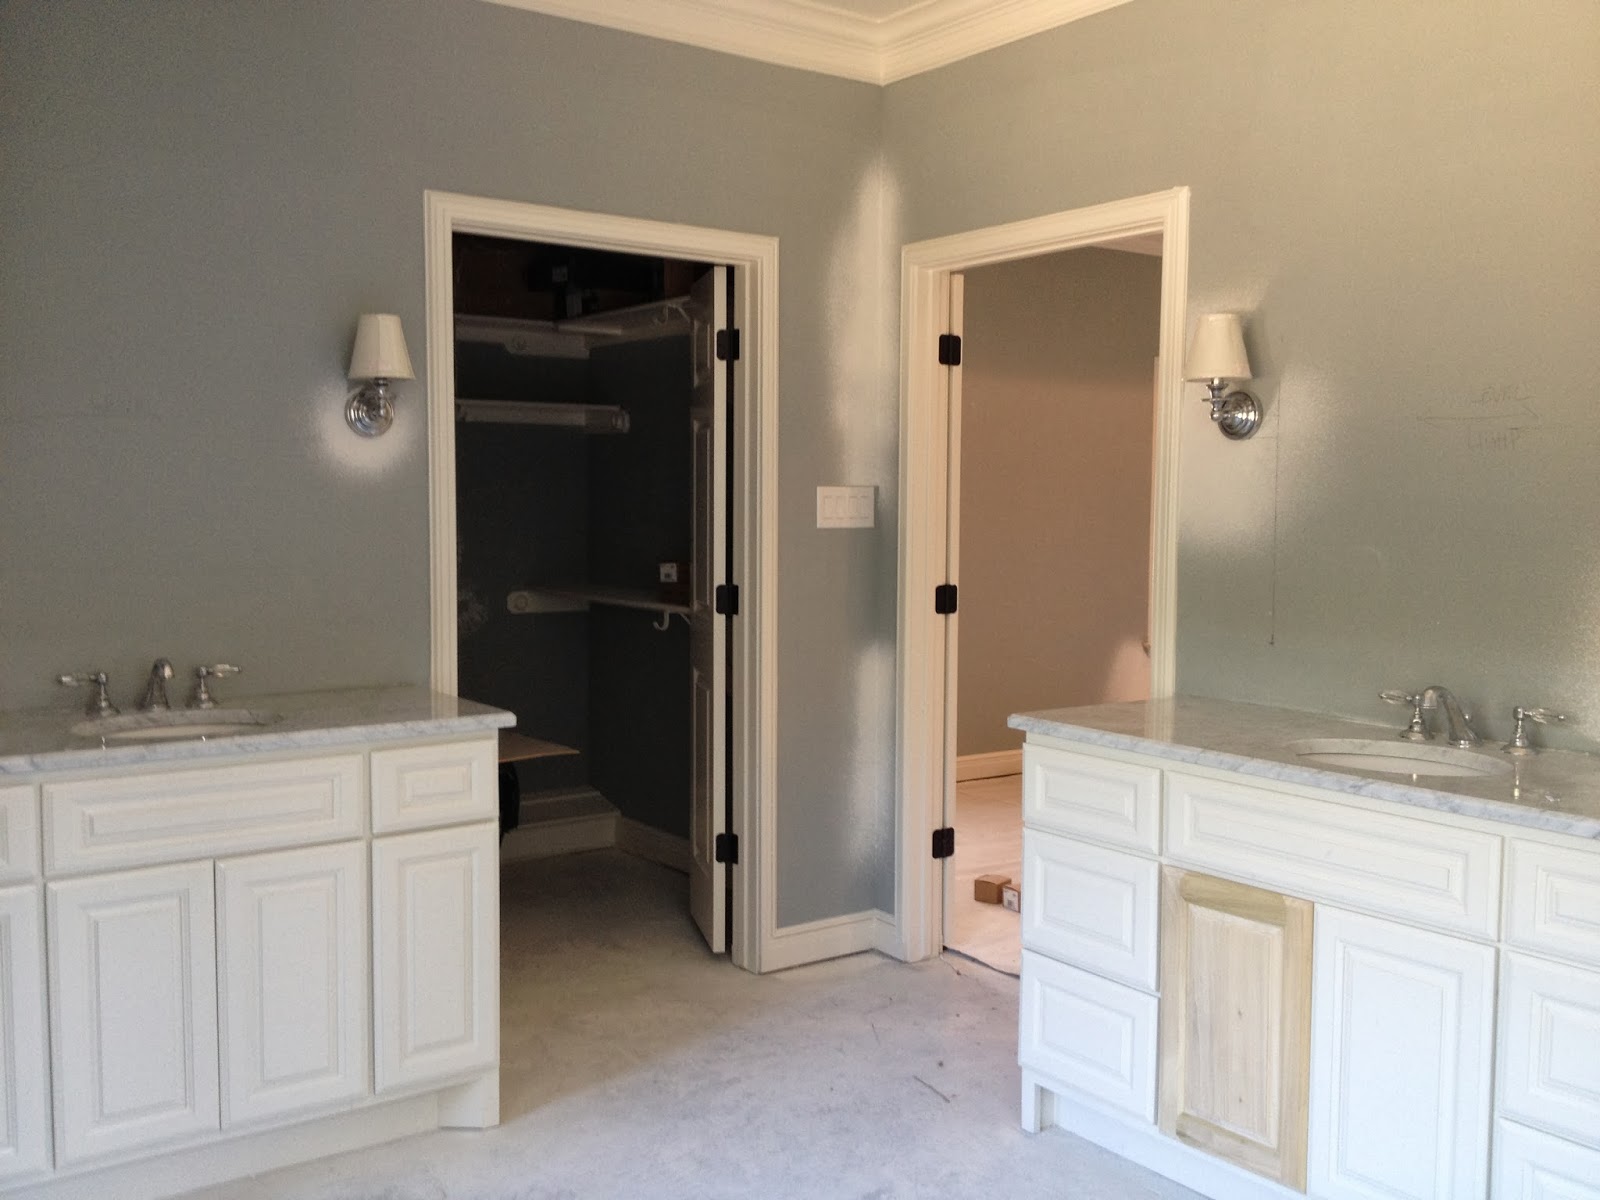 elegant bathroom vanities allowingspace for two separate vanity cabinets. Separate vanities 